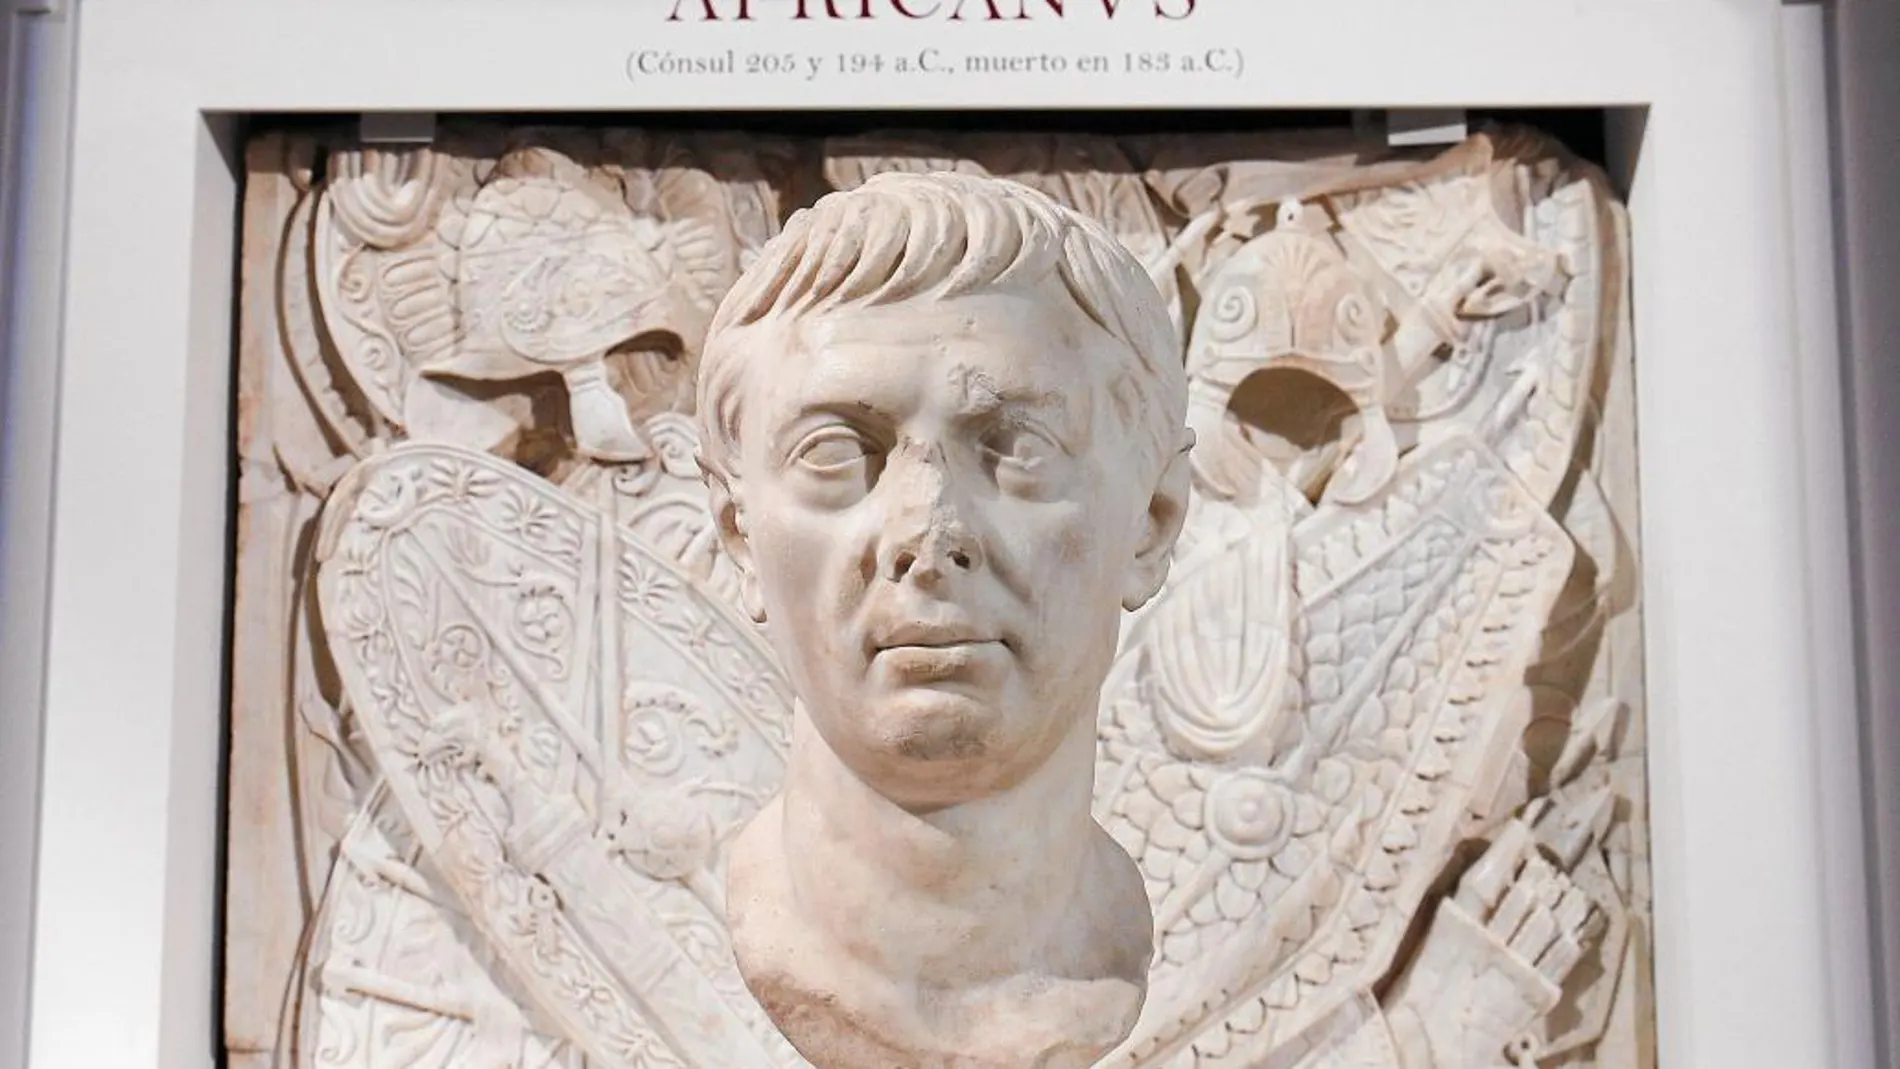 El busto del Museo Nacional de las Termas de Roma, retrato de Publio Cornelio Escipión